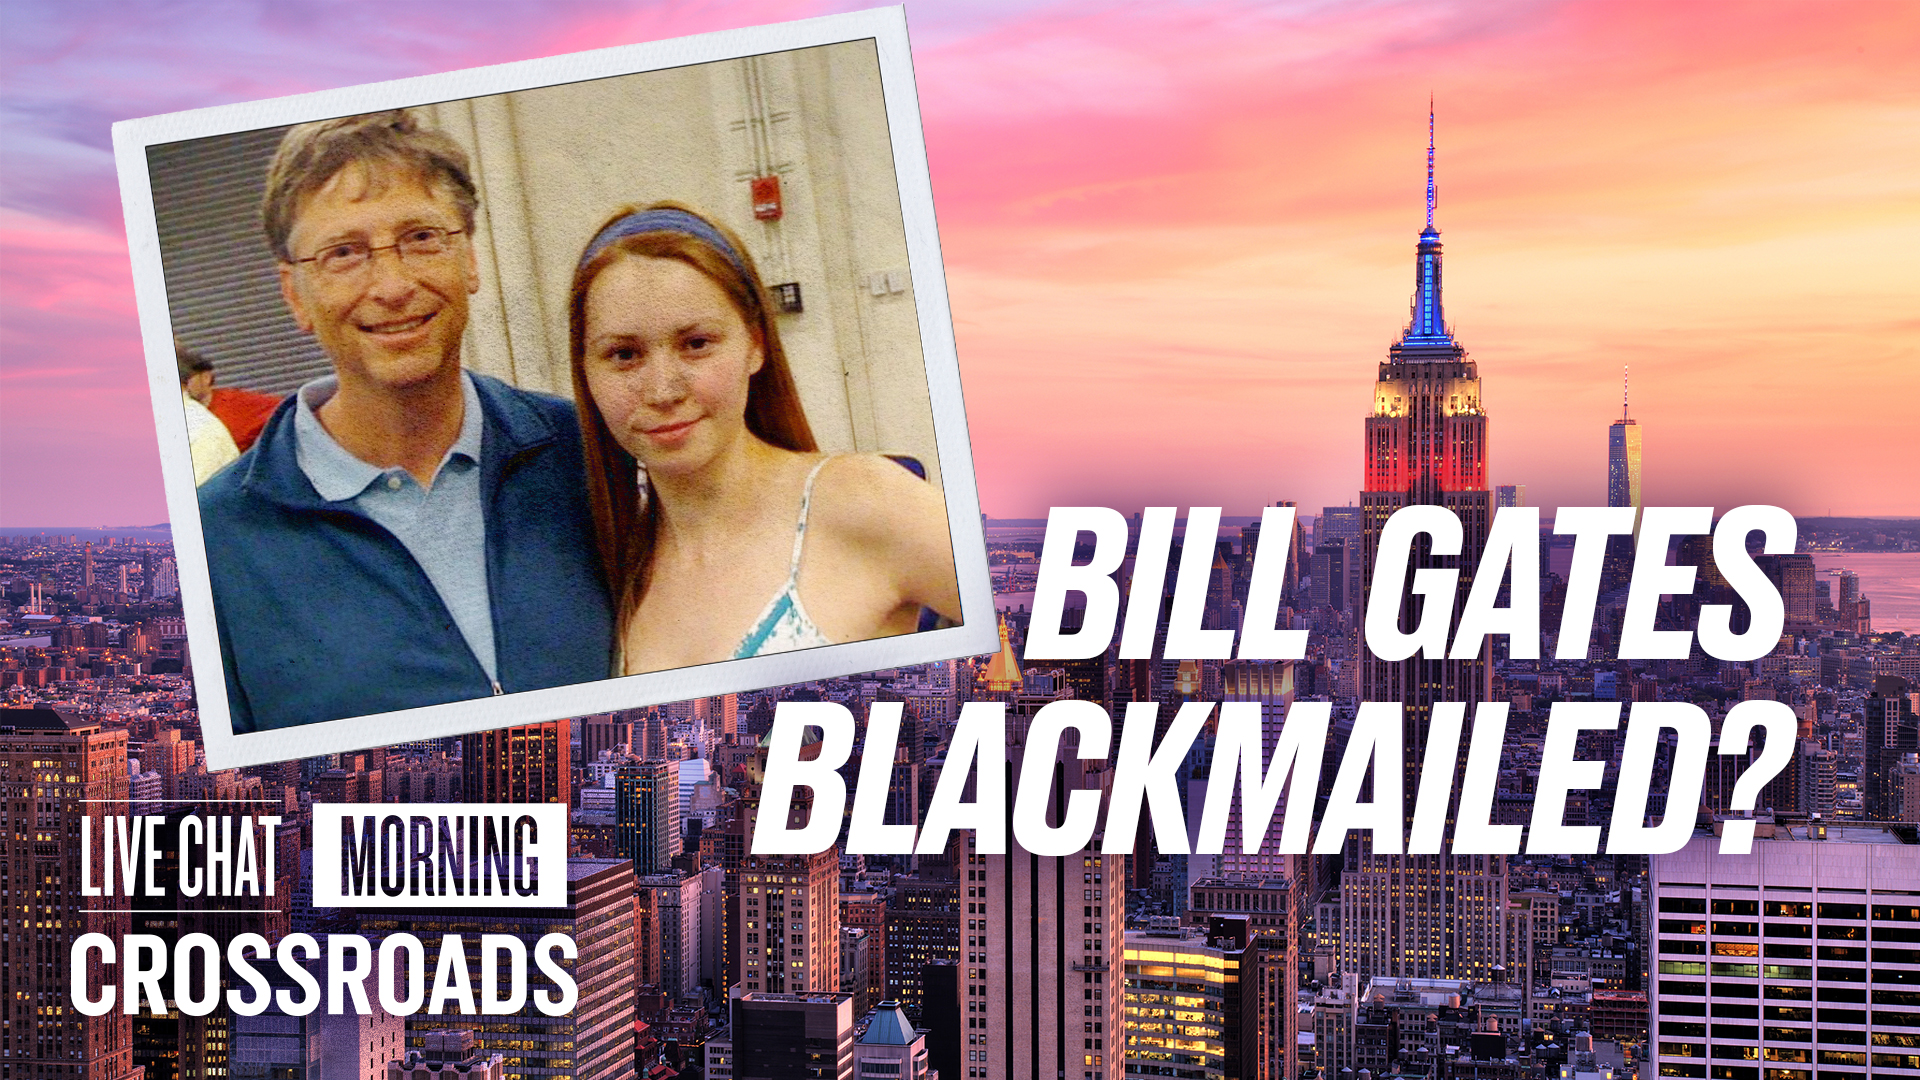 Jeffrey Epstein Allegedly Blackmailed Bill Gates Over Affair